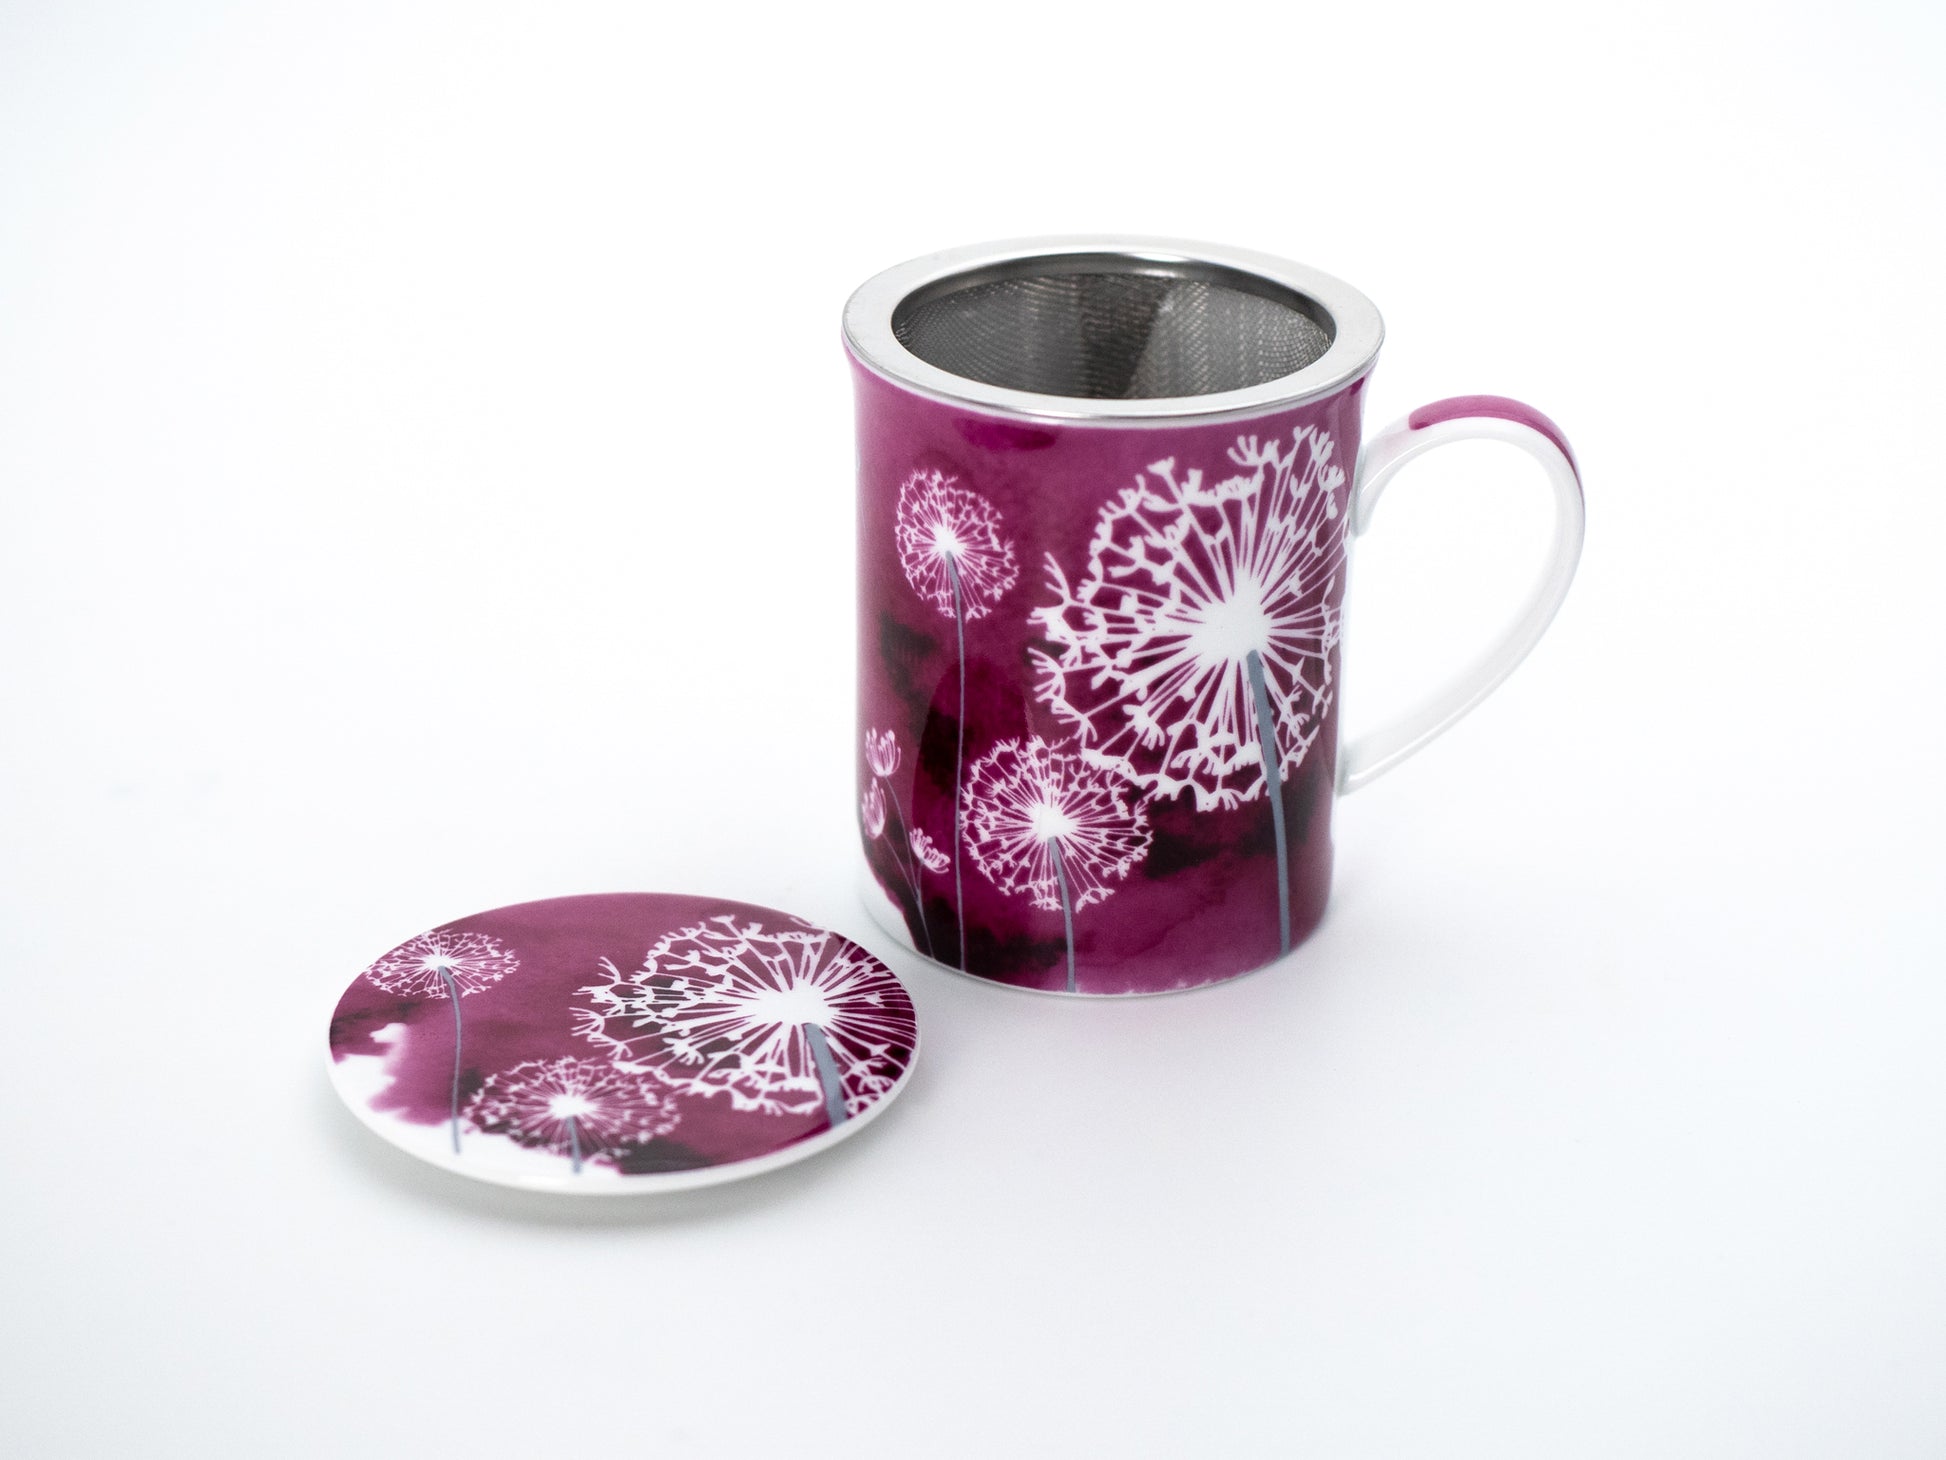 Pink dandelion porcelain infuser mug and stainless steel infuser basket stand next its porcelain lid